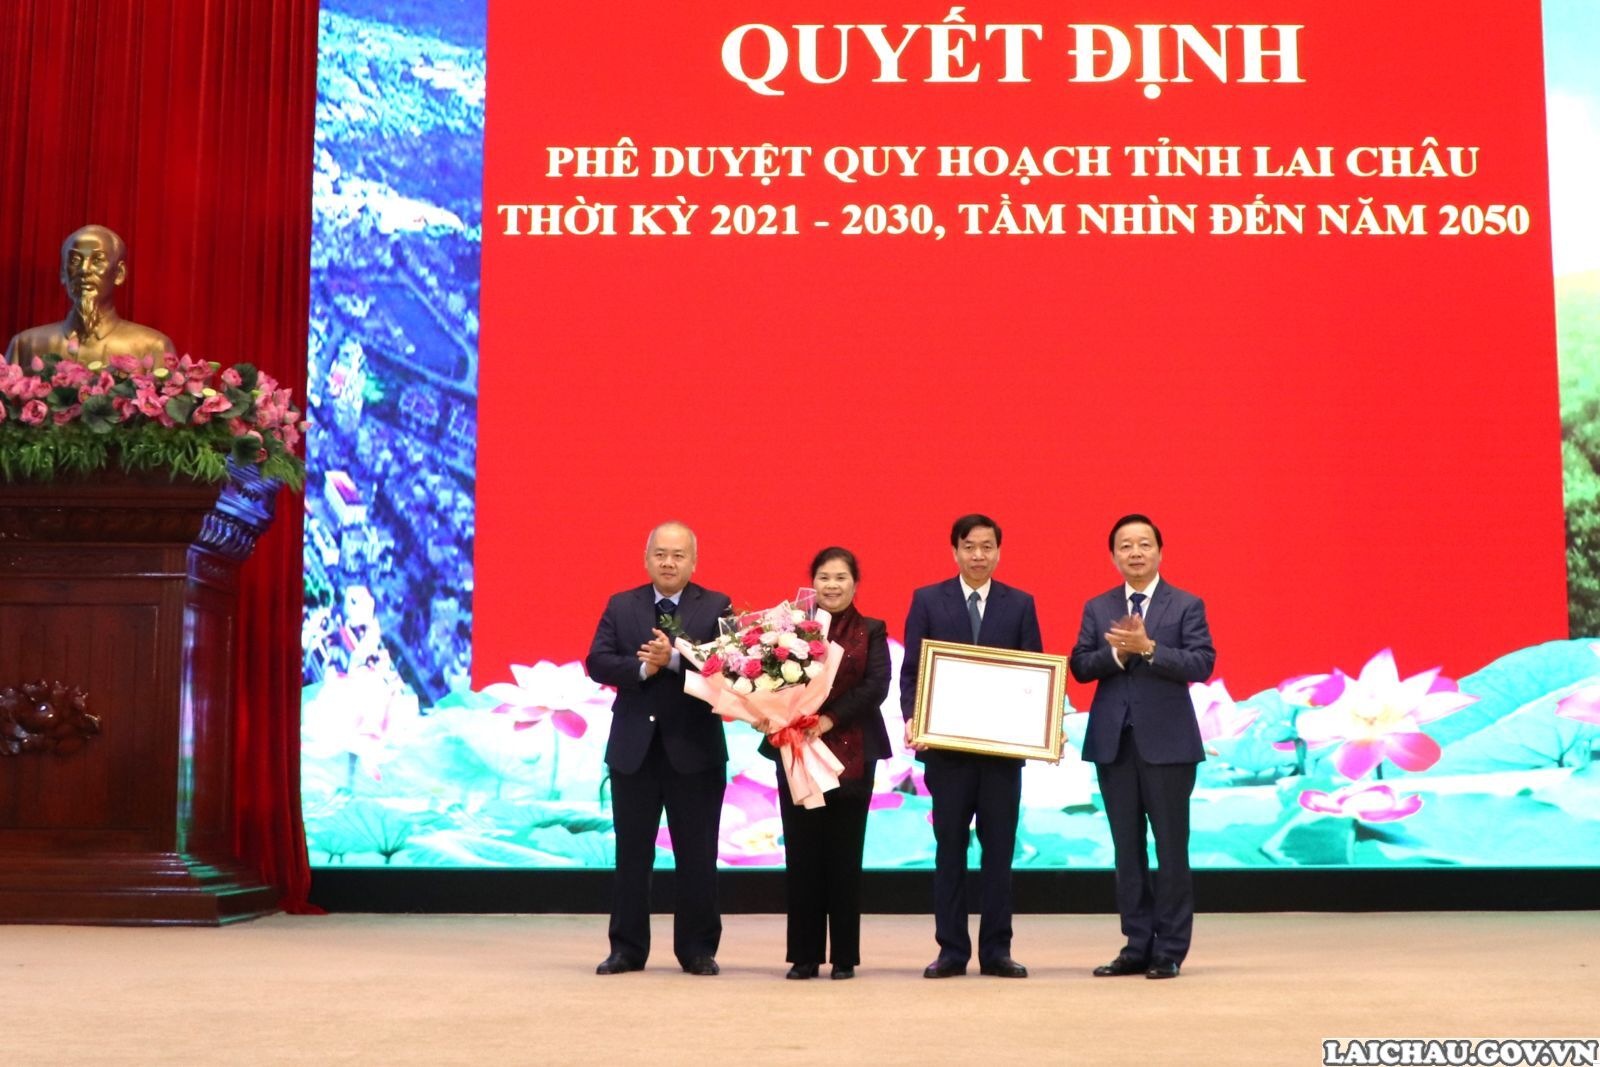 Phó Thủ tướng Chính phủ Trần Hồng Hà, Thứ trưởng Bộ Kế hoạch và Đầu tư Đỗ Thành Trung trao Quyết định Phê duyệt Quy hoạch tỉnh Lai Châu thời kỳ 2021 - 2030, tầm nhìn đến năm 2050 cho lãnh đạo tỉnh Lai Châu.